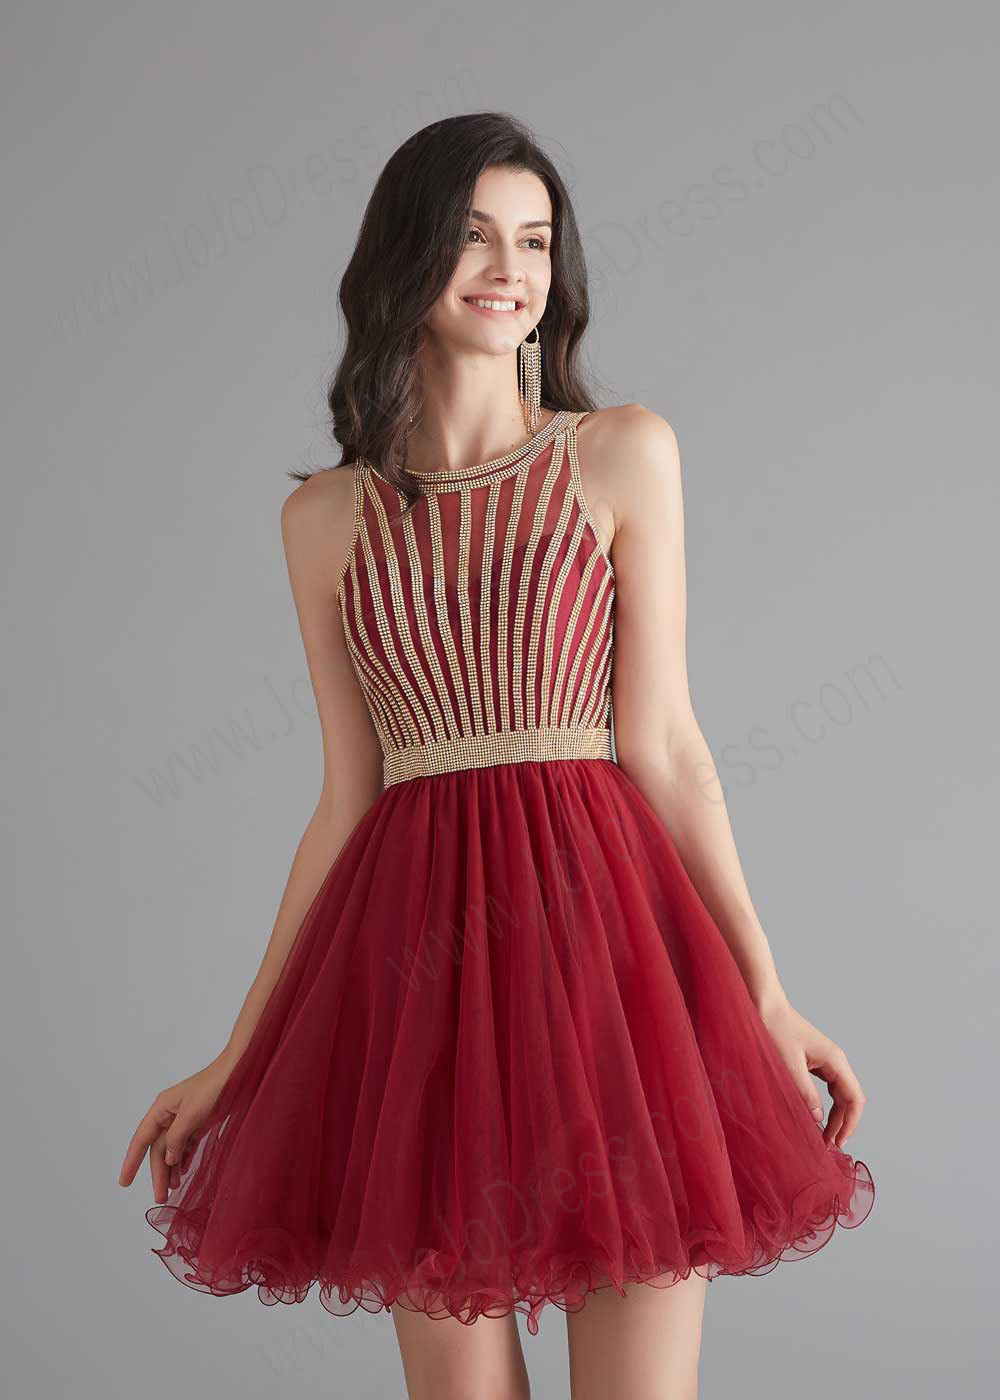 Chic Short Dark Red Tulle Evening Dress – JoJo Shop